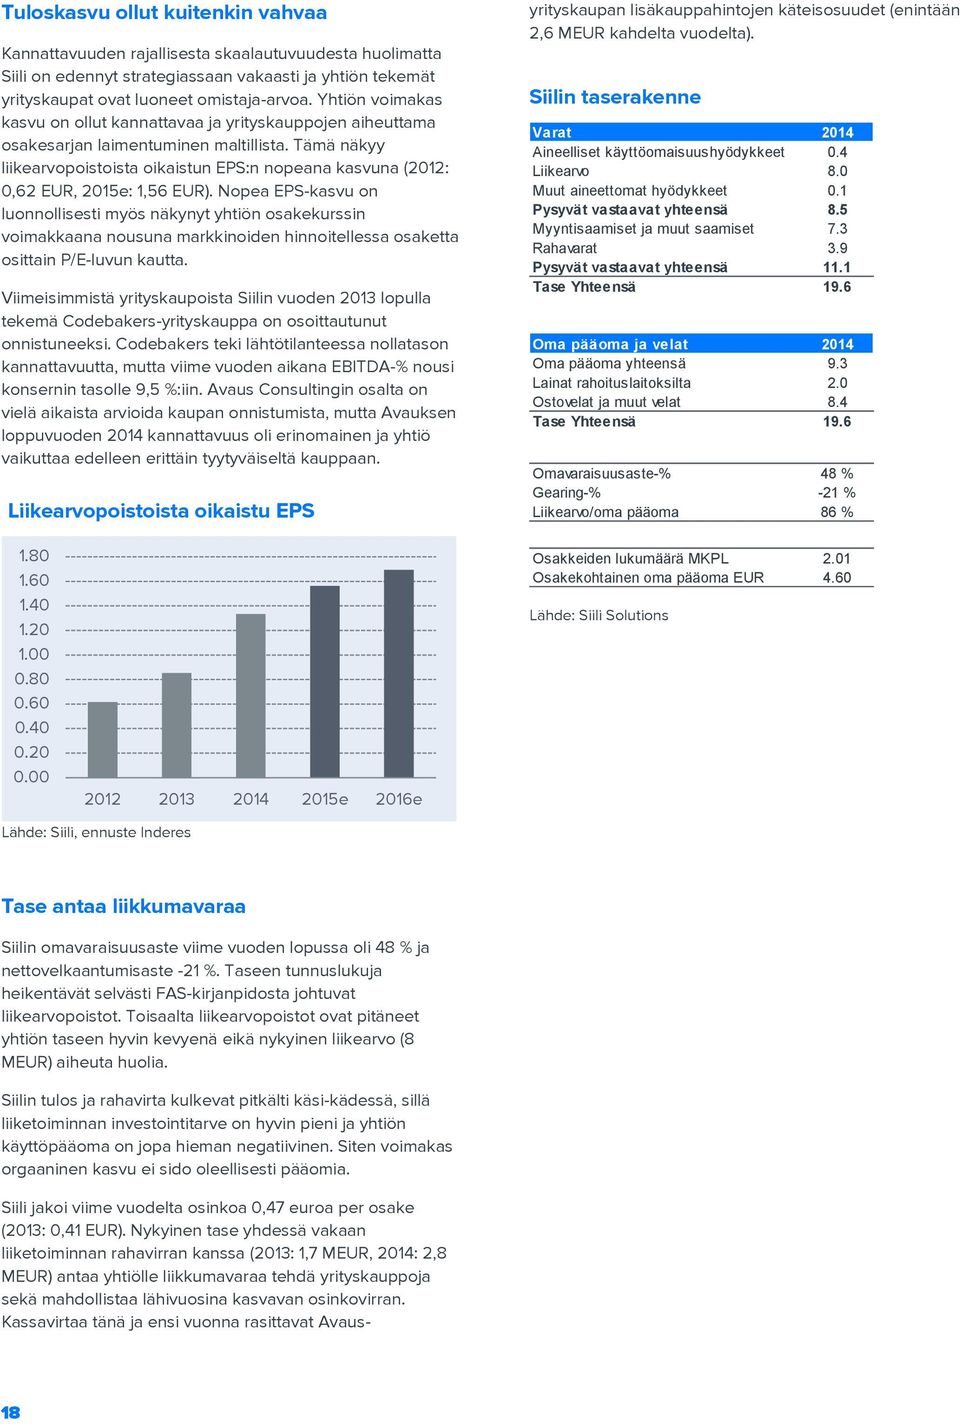 Tämä näkyy liikearvopoistoista oikaistun EPS:n nopeana kasvuna (2012: 0,62 EUR, 2015e: 1,56 EUR).